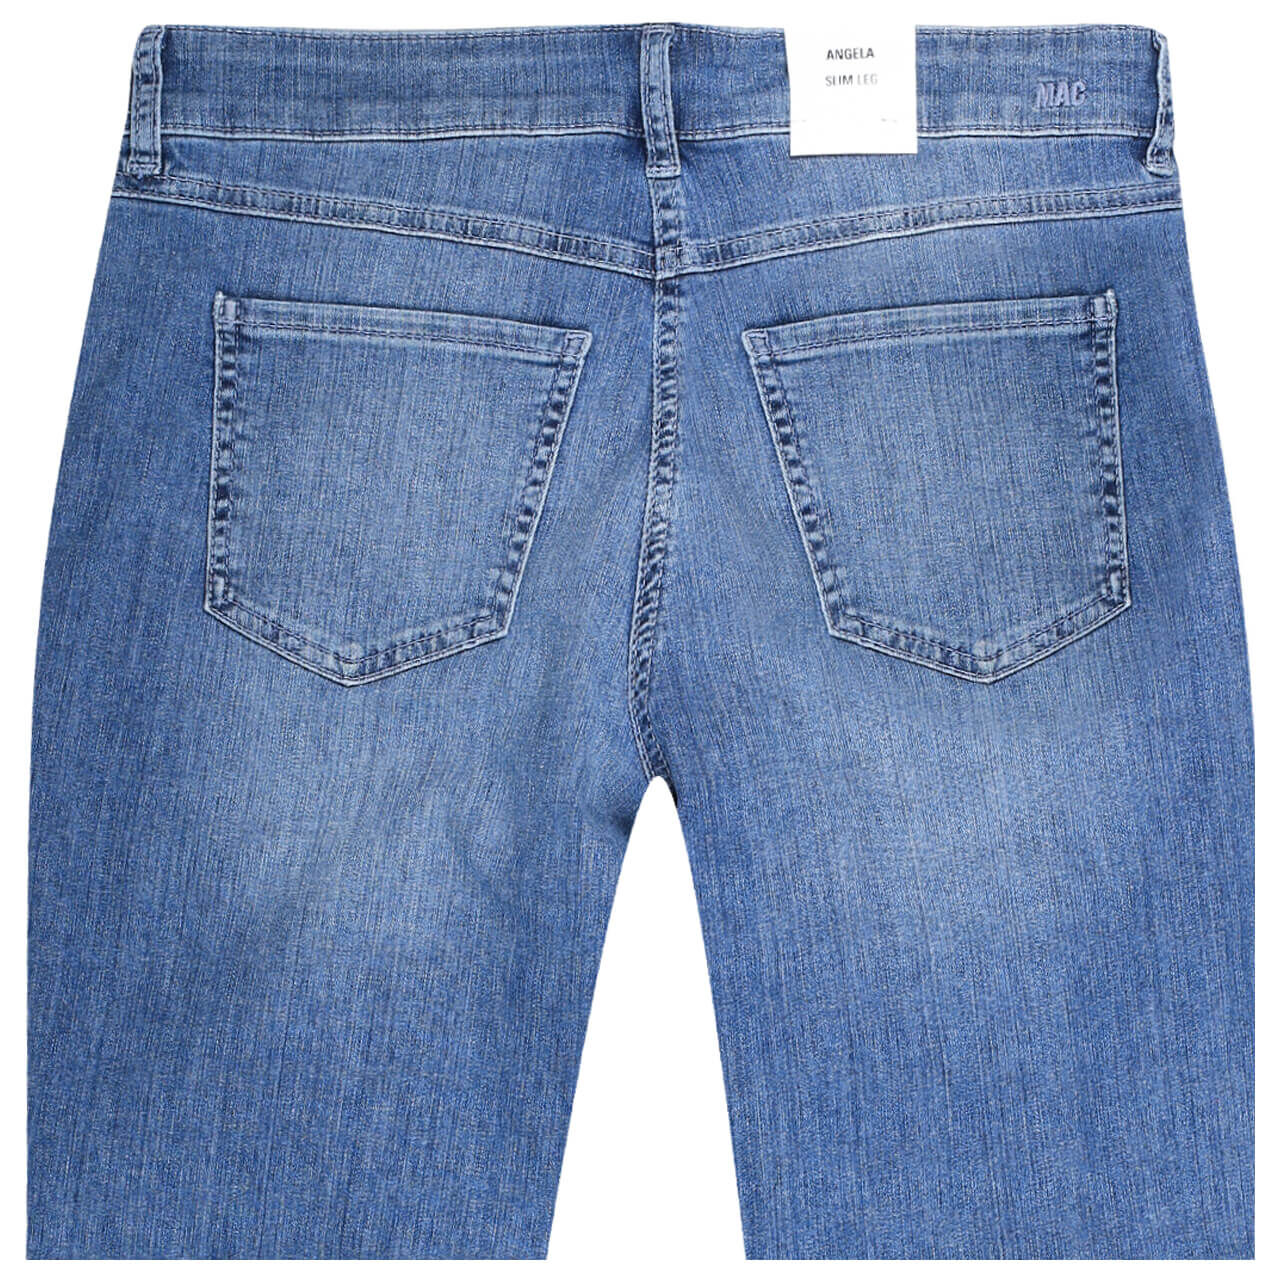 MAC Jeans Angela 7/8 für Damen in Blau angewaschen, FarbNr.: D531